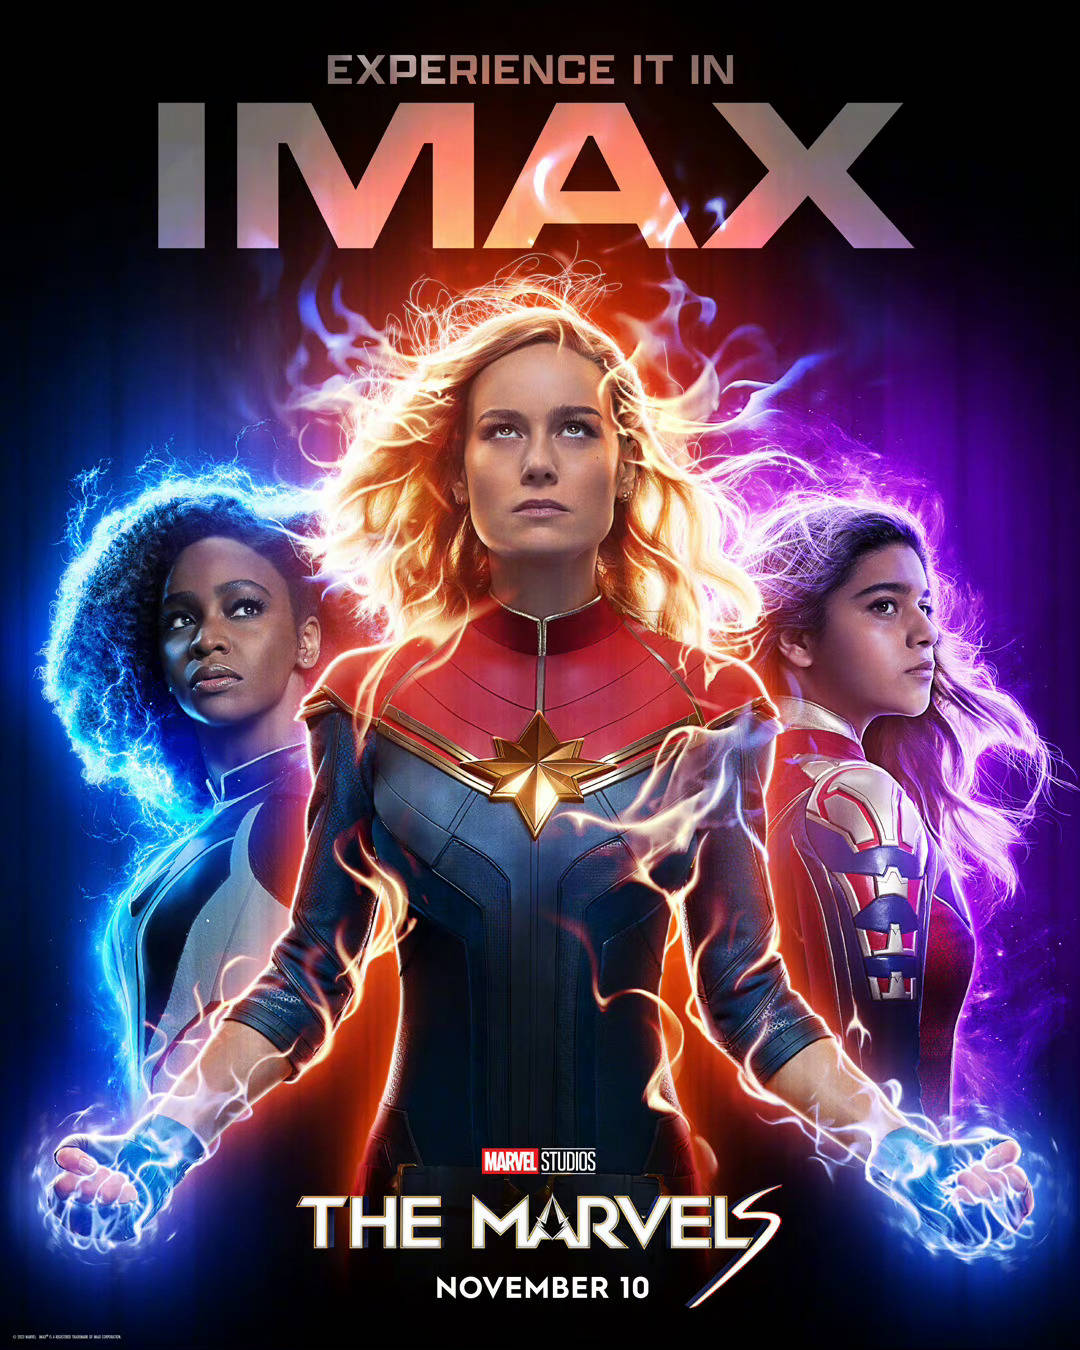 漫威新片《惊奇队长2》曝IMAX海报及预告 惊奇队长携光系女英雄集结亮相 